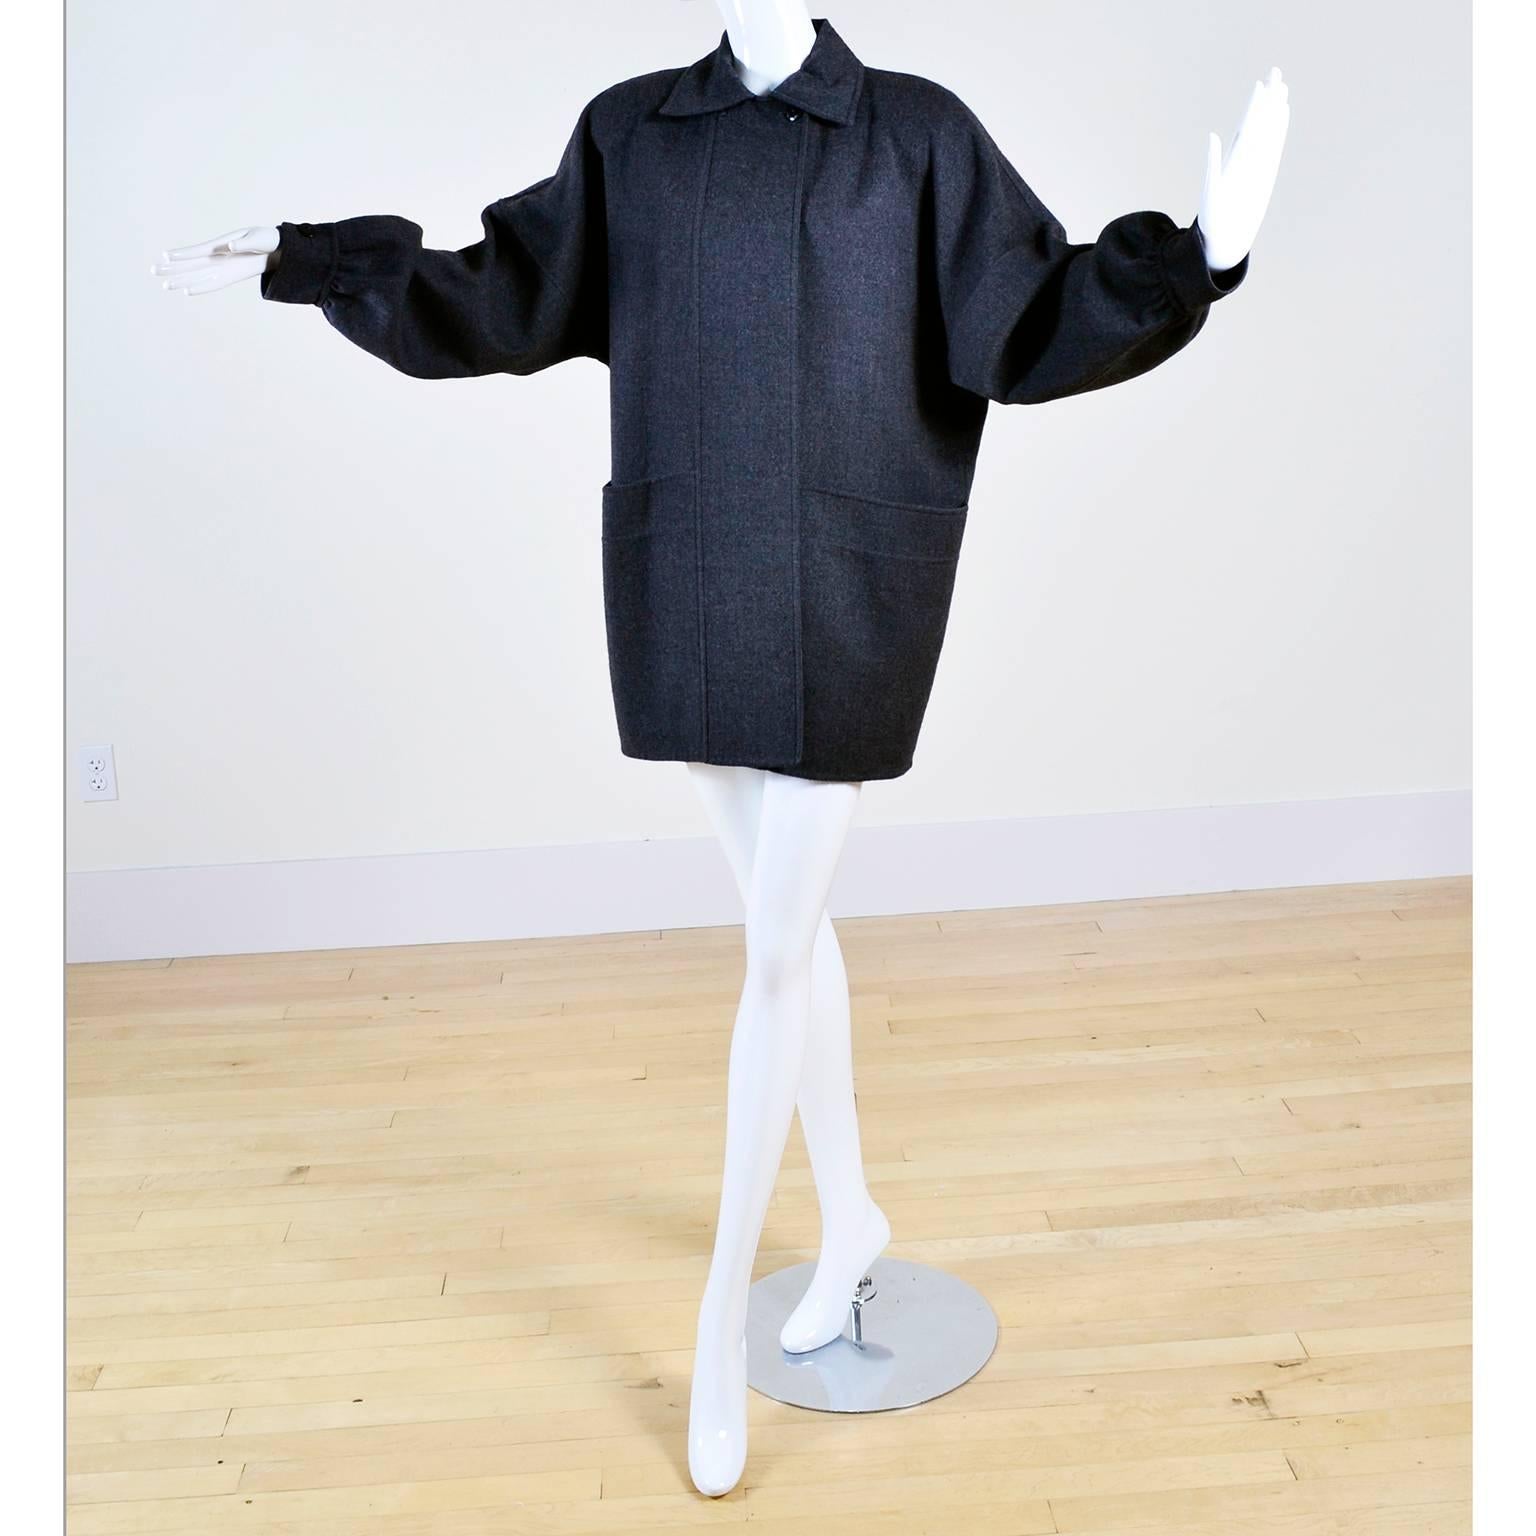 Il s'agit d'une fabuleuse veste vintage en laine grise Salvatore Ferragamo des années 1980 avec des poches avant. Ce serait un excellent complément à toute garde-robe d'automne et d'hiver !  Ce manteau polyvalent de la marque a la coupe oversize